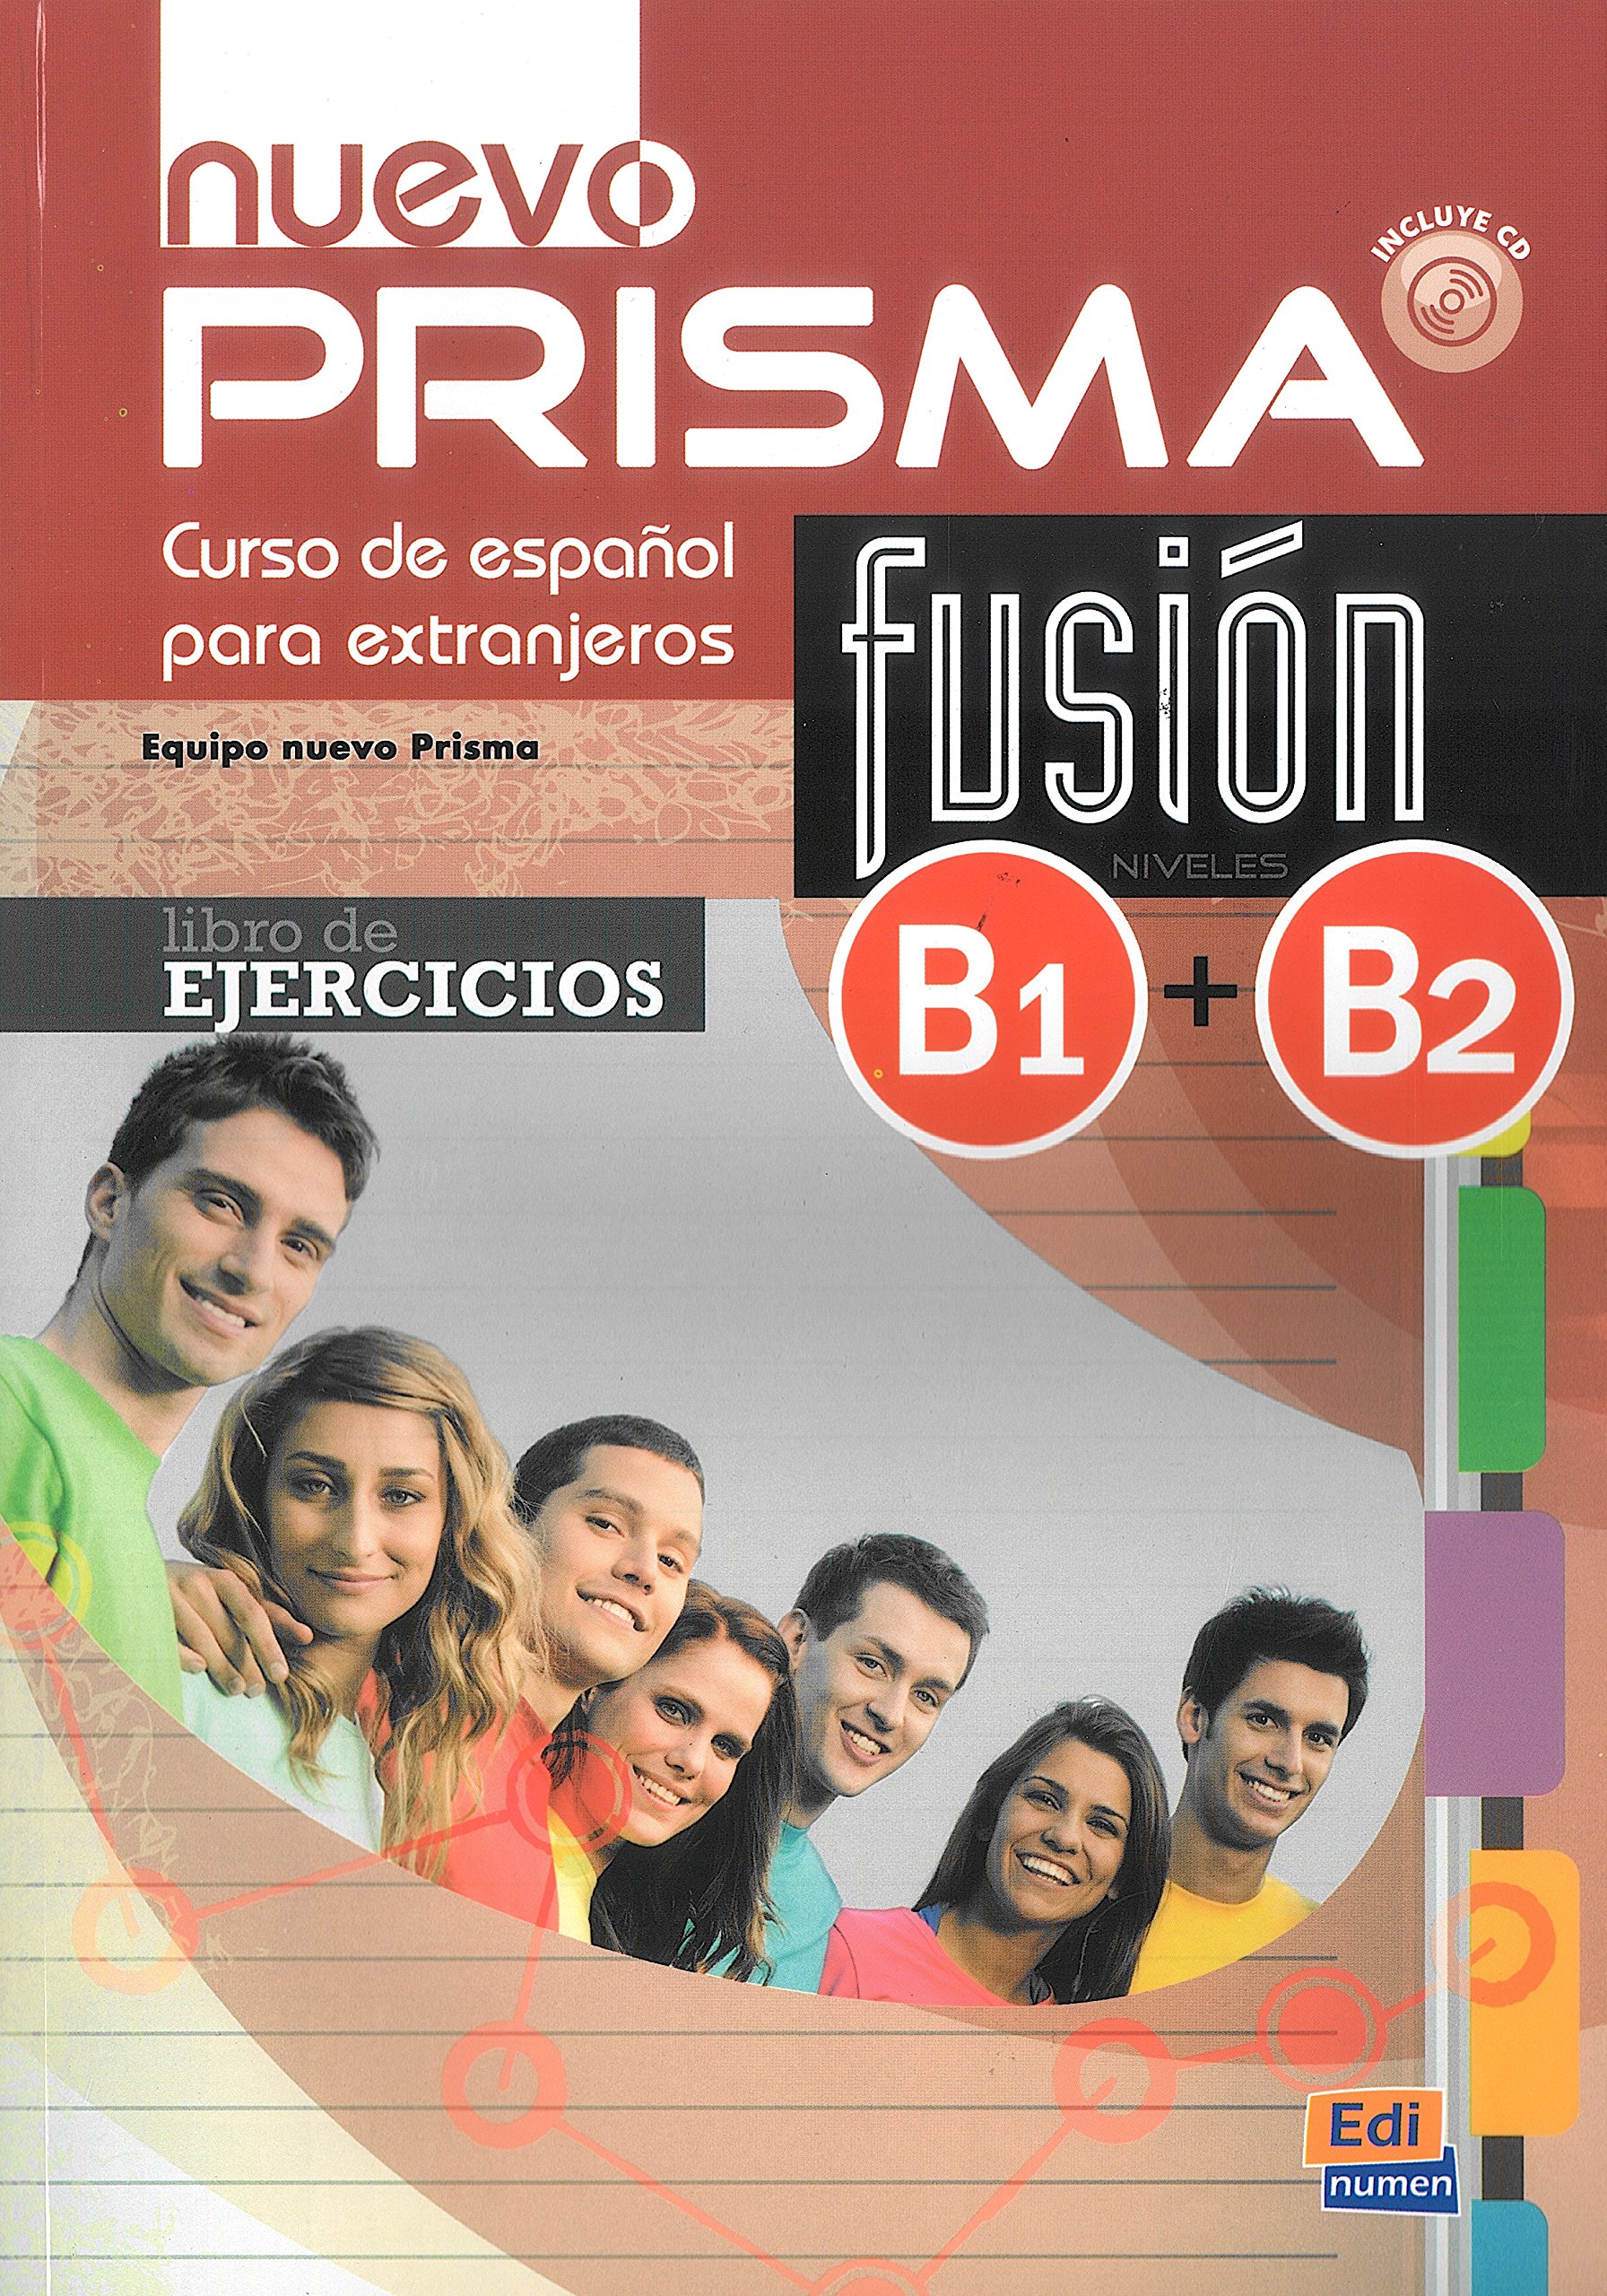 NUEVO PRISMA FUSION B1 + B2 Libro De Ejercicios  + Extensión digital